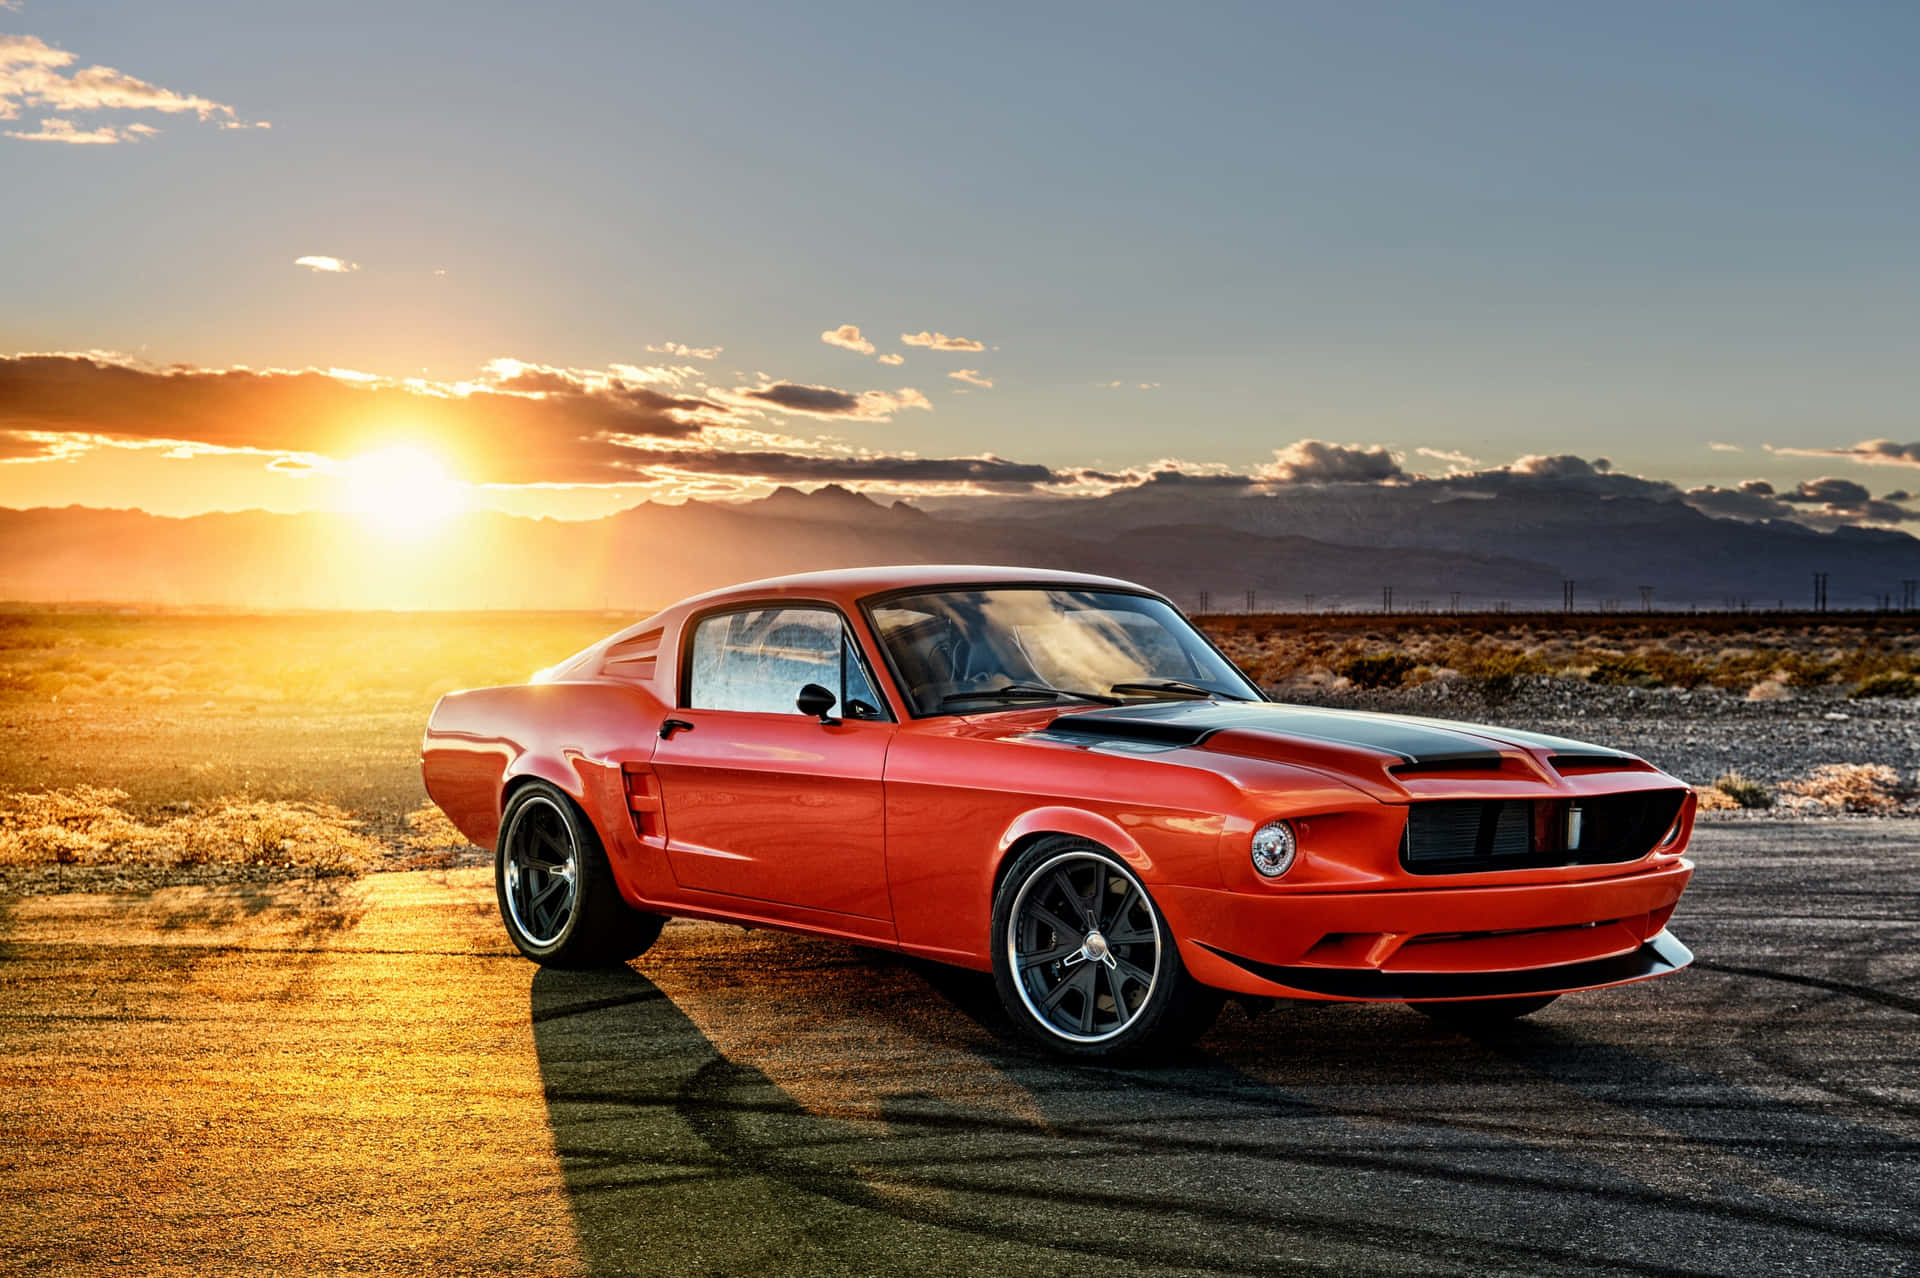 Enröd Mustang Står Parkerad I Öknen Vid Solnedgången.